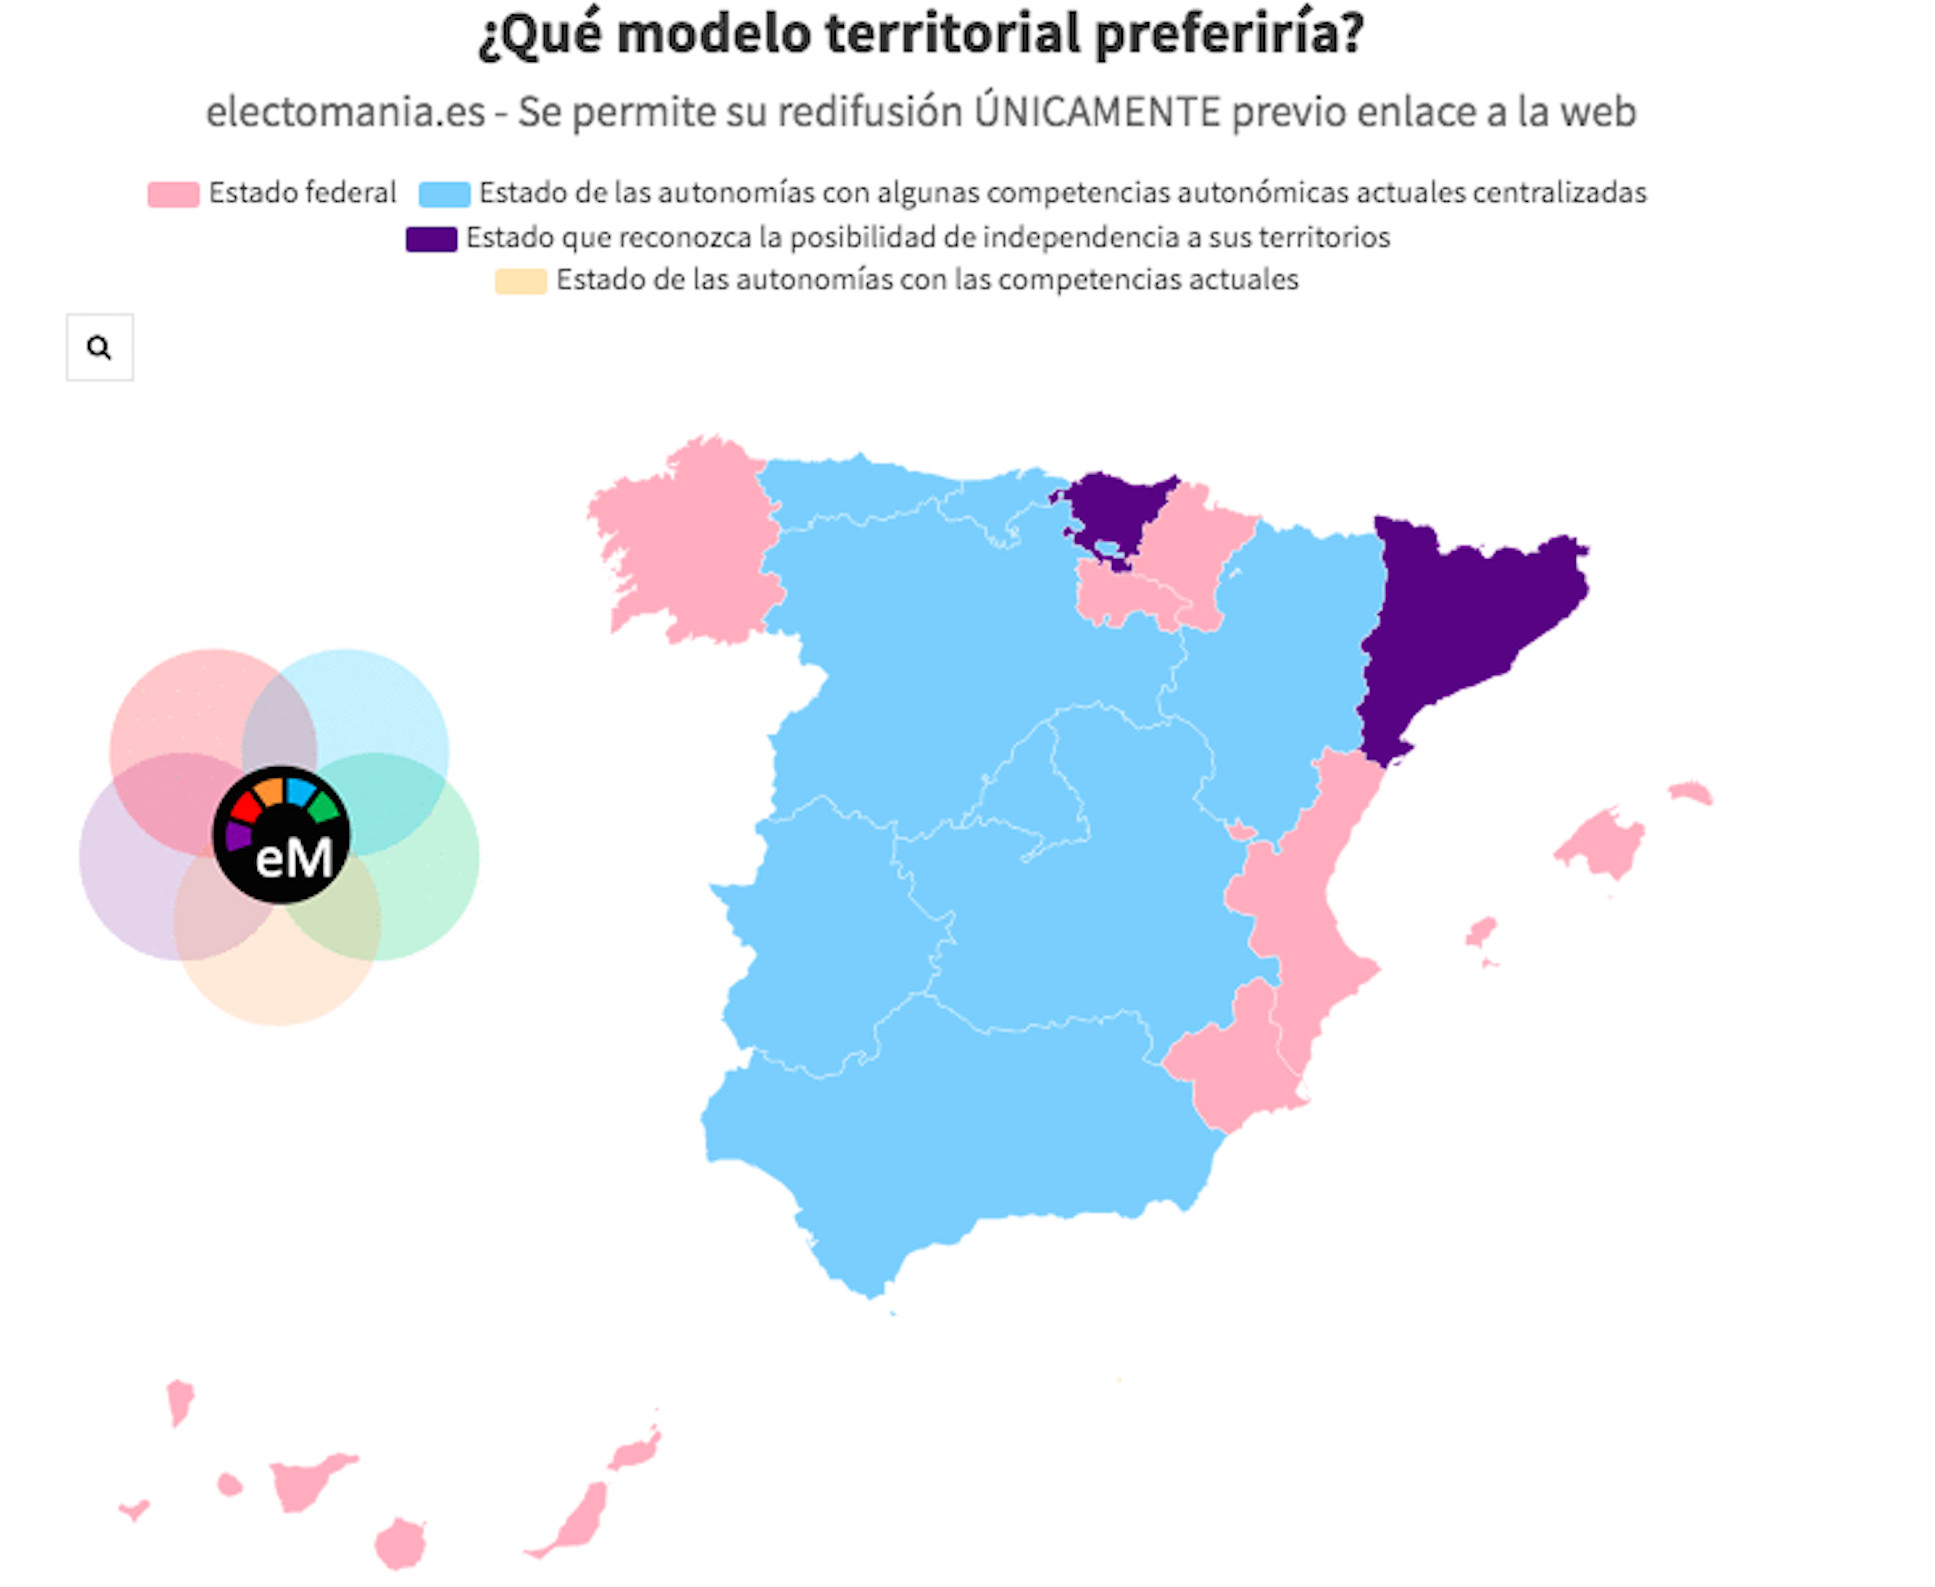 Este es el modelo de Estado preferido de Catalunya, según un sondeo